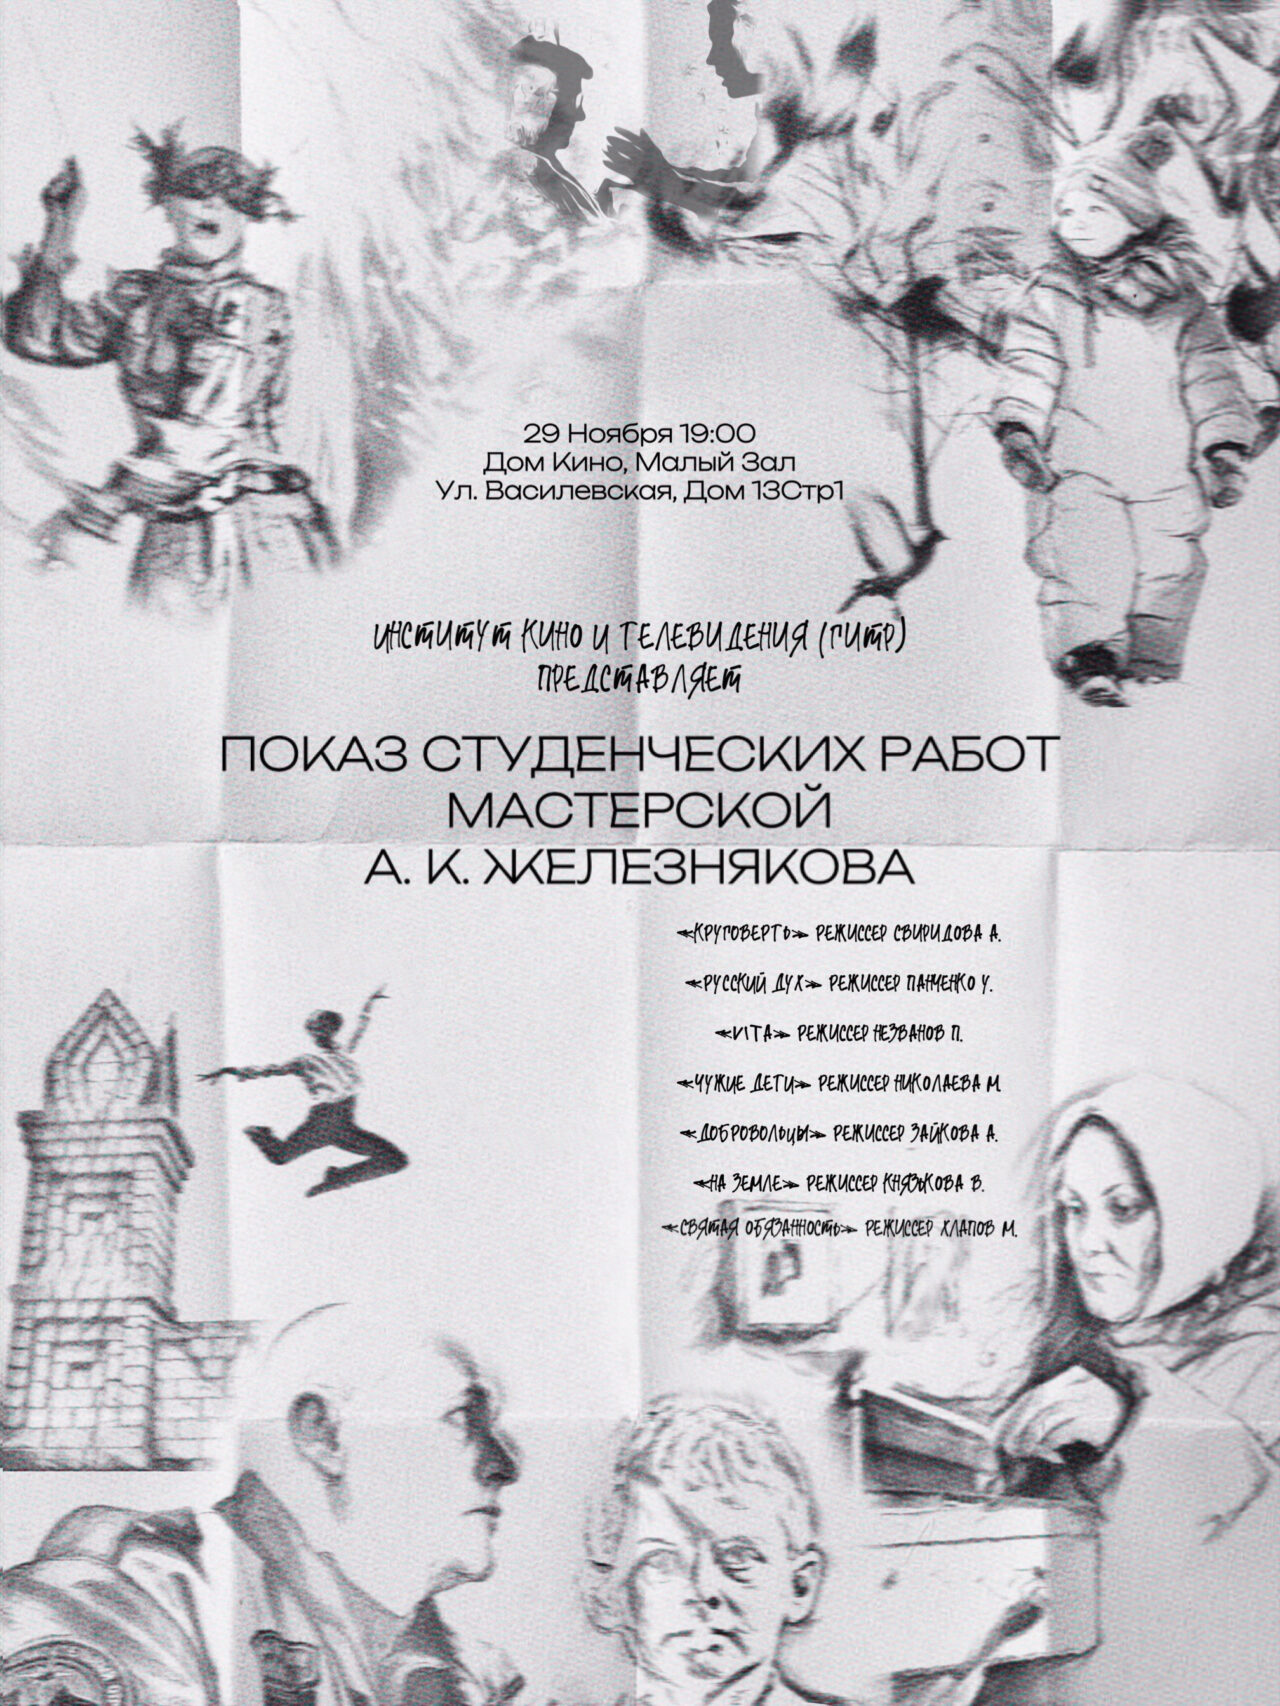 29 ноября в Малом зале Центрального Дома кино Ассоциация документального кино проводит показ студенческих работ мастерской Андрея Железнякова